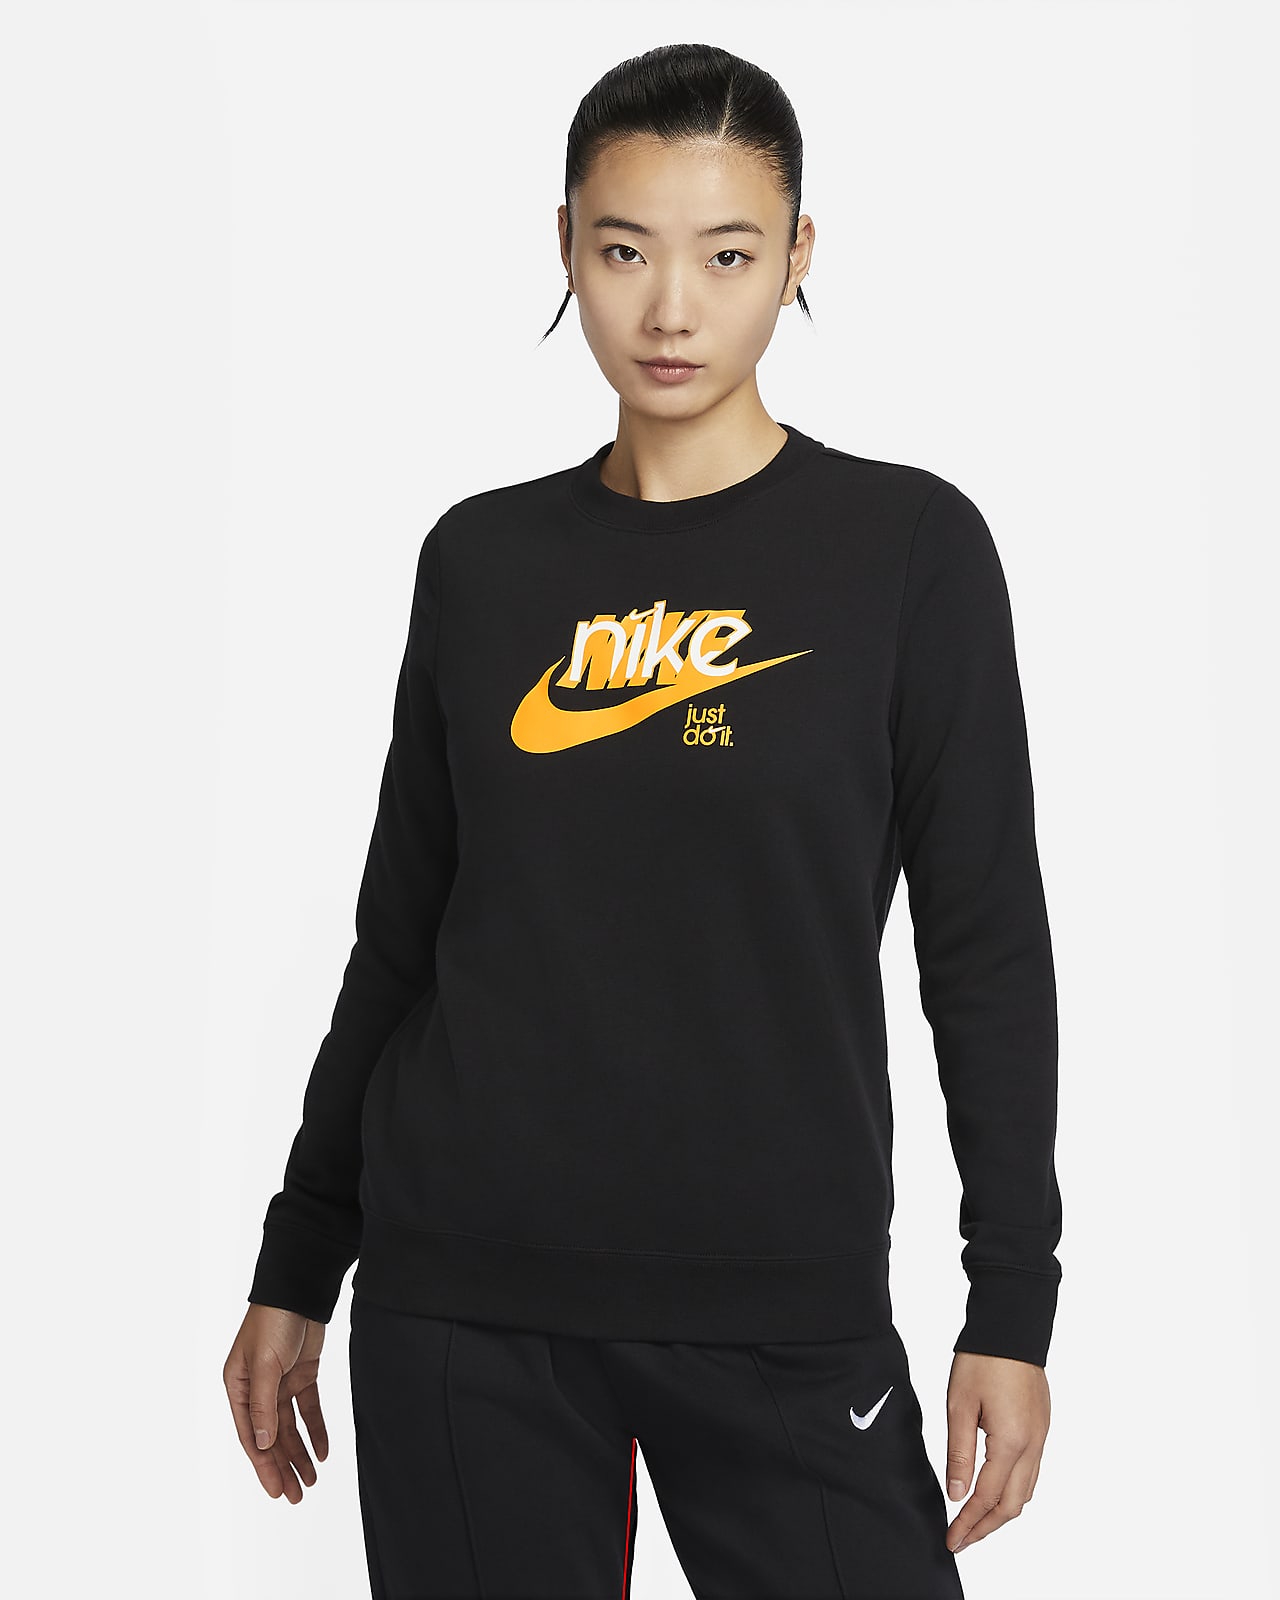 Nike NRG Clothing, Joggers, Hoodies, T-Shirts